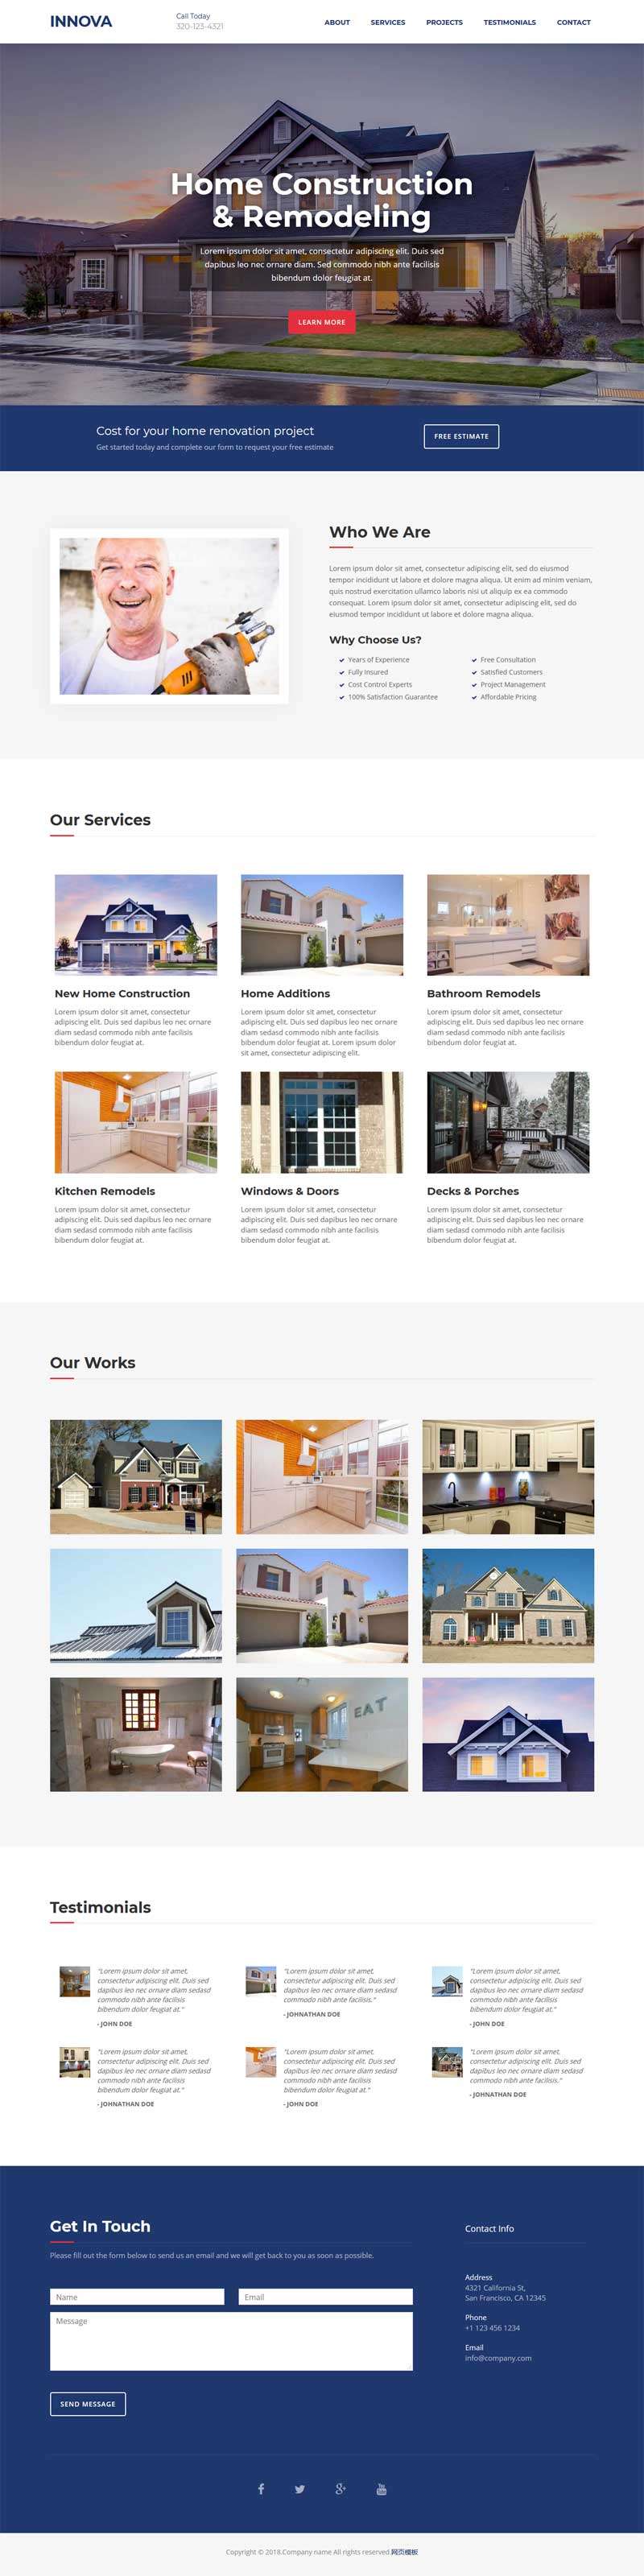 大气的房屋维修服务公司介绍页面模板